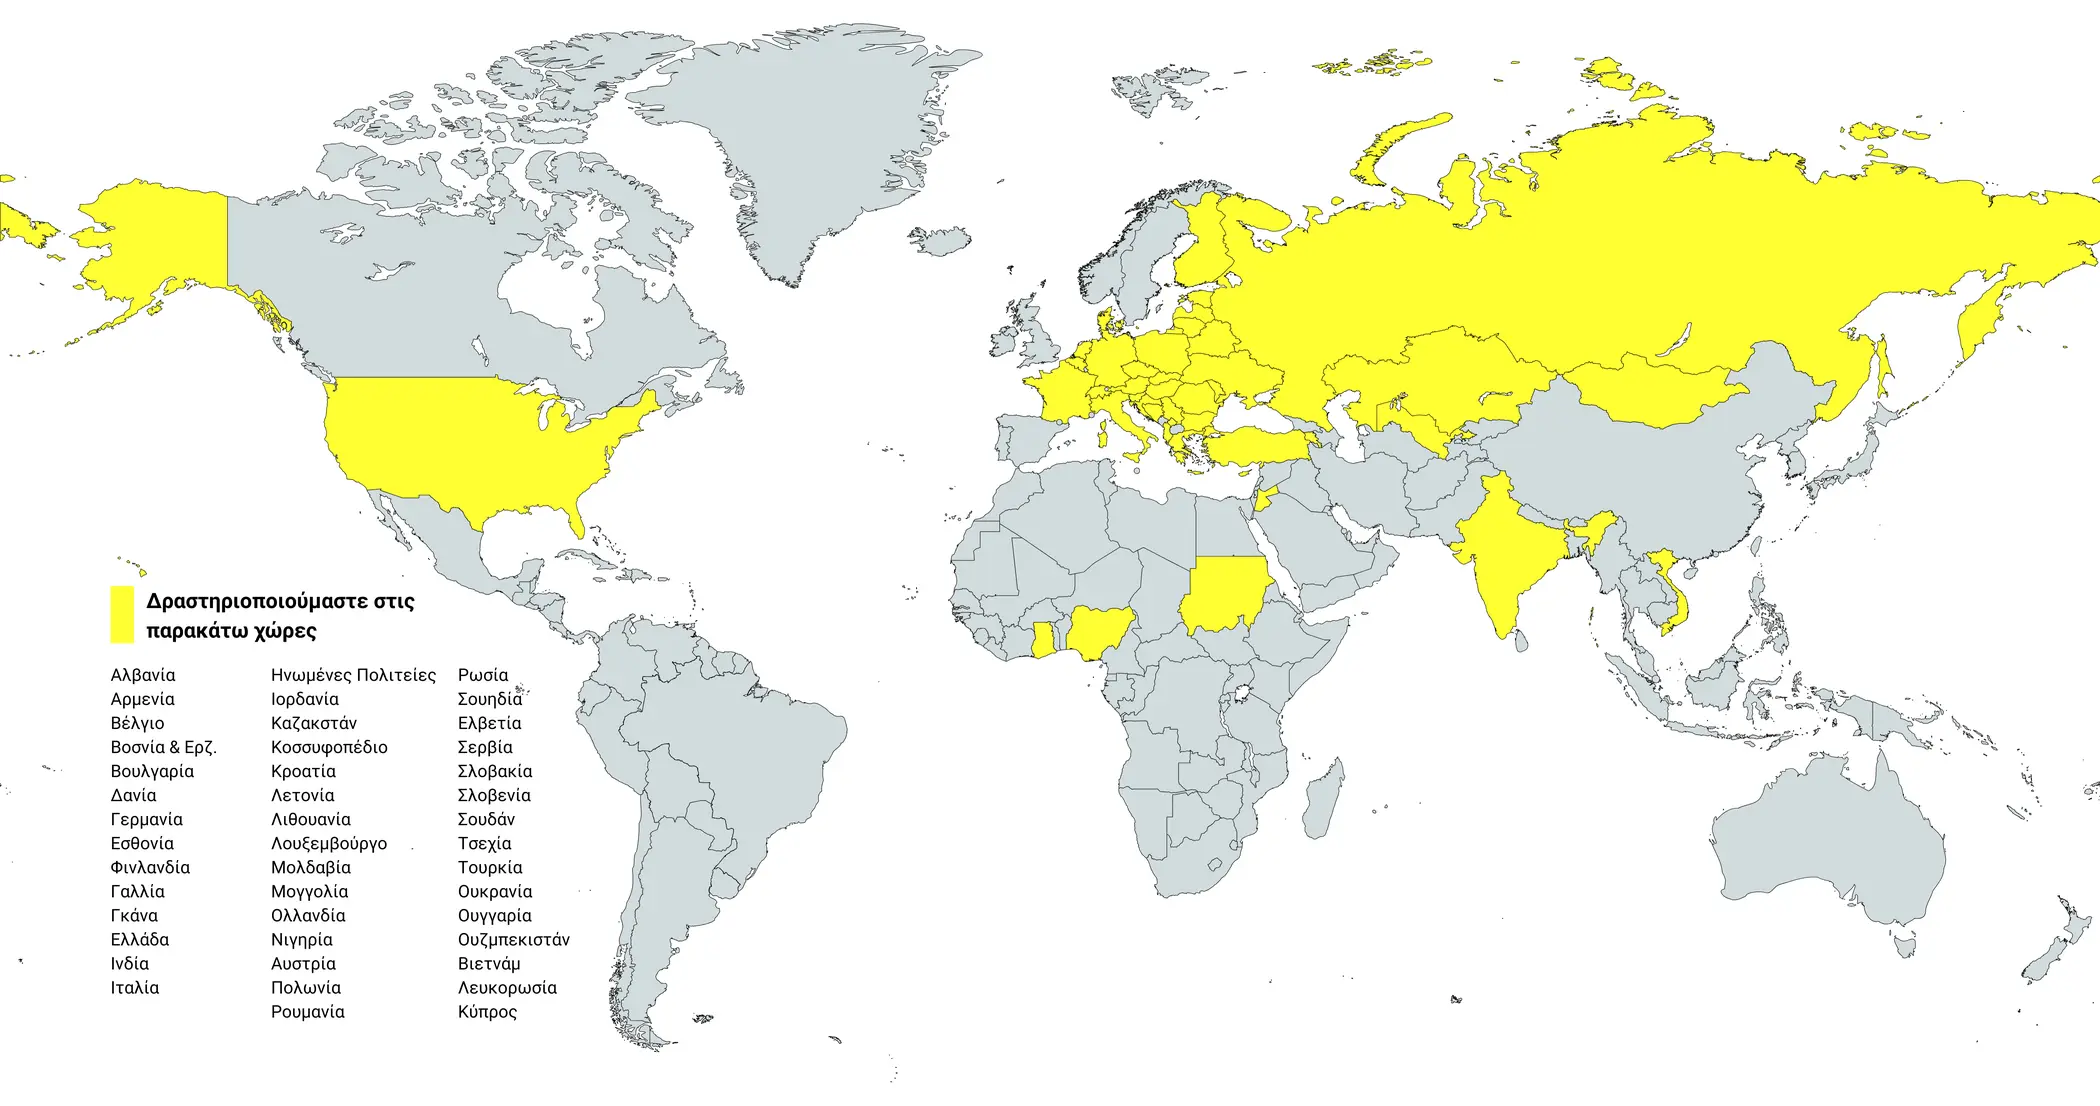 Χάρτης των χωρών με τους πελάτες της HYBRIMIN, Λογισμικό διαμόρφωσης ζωοτροφών